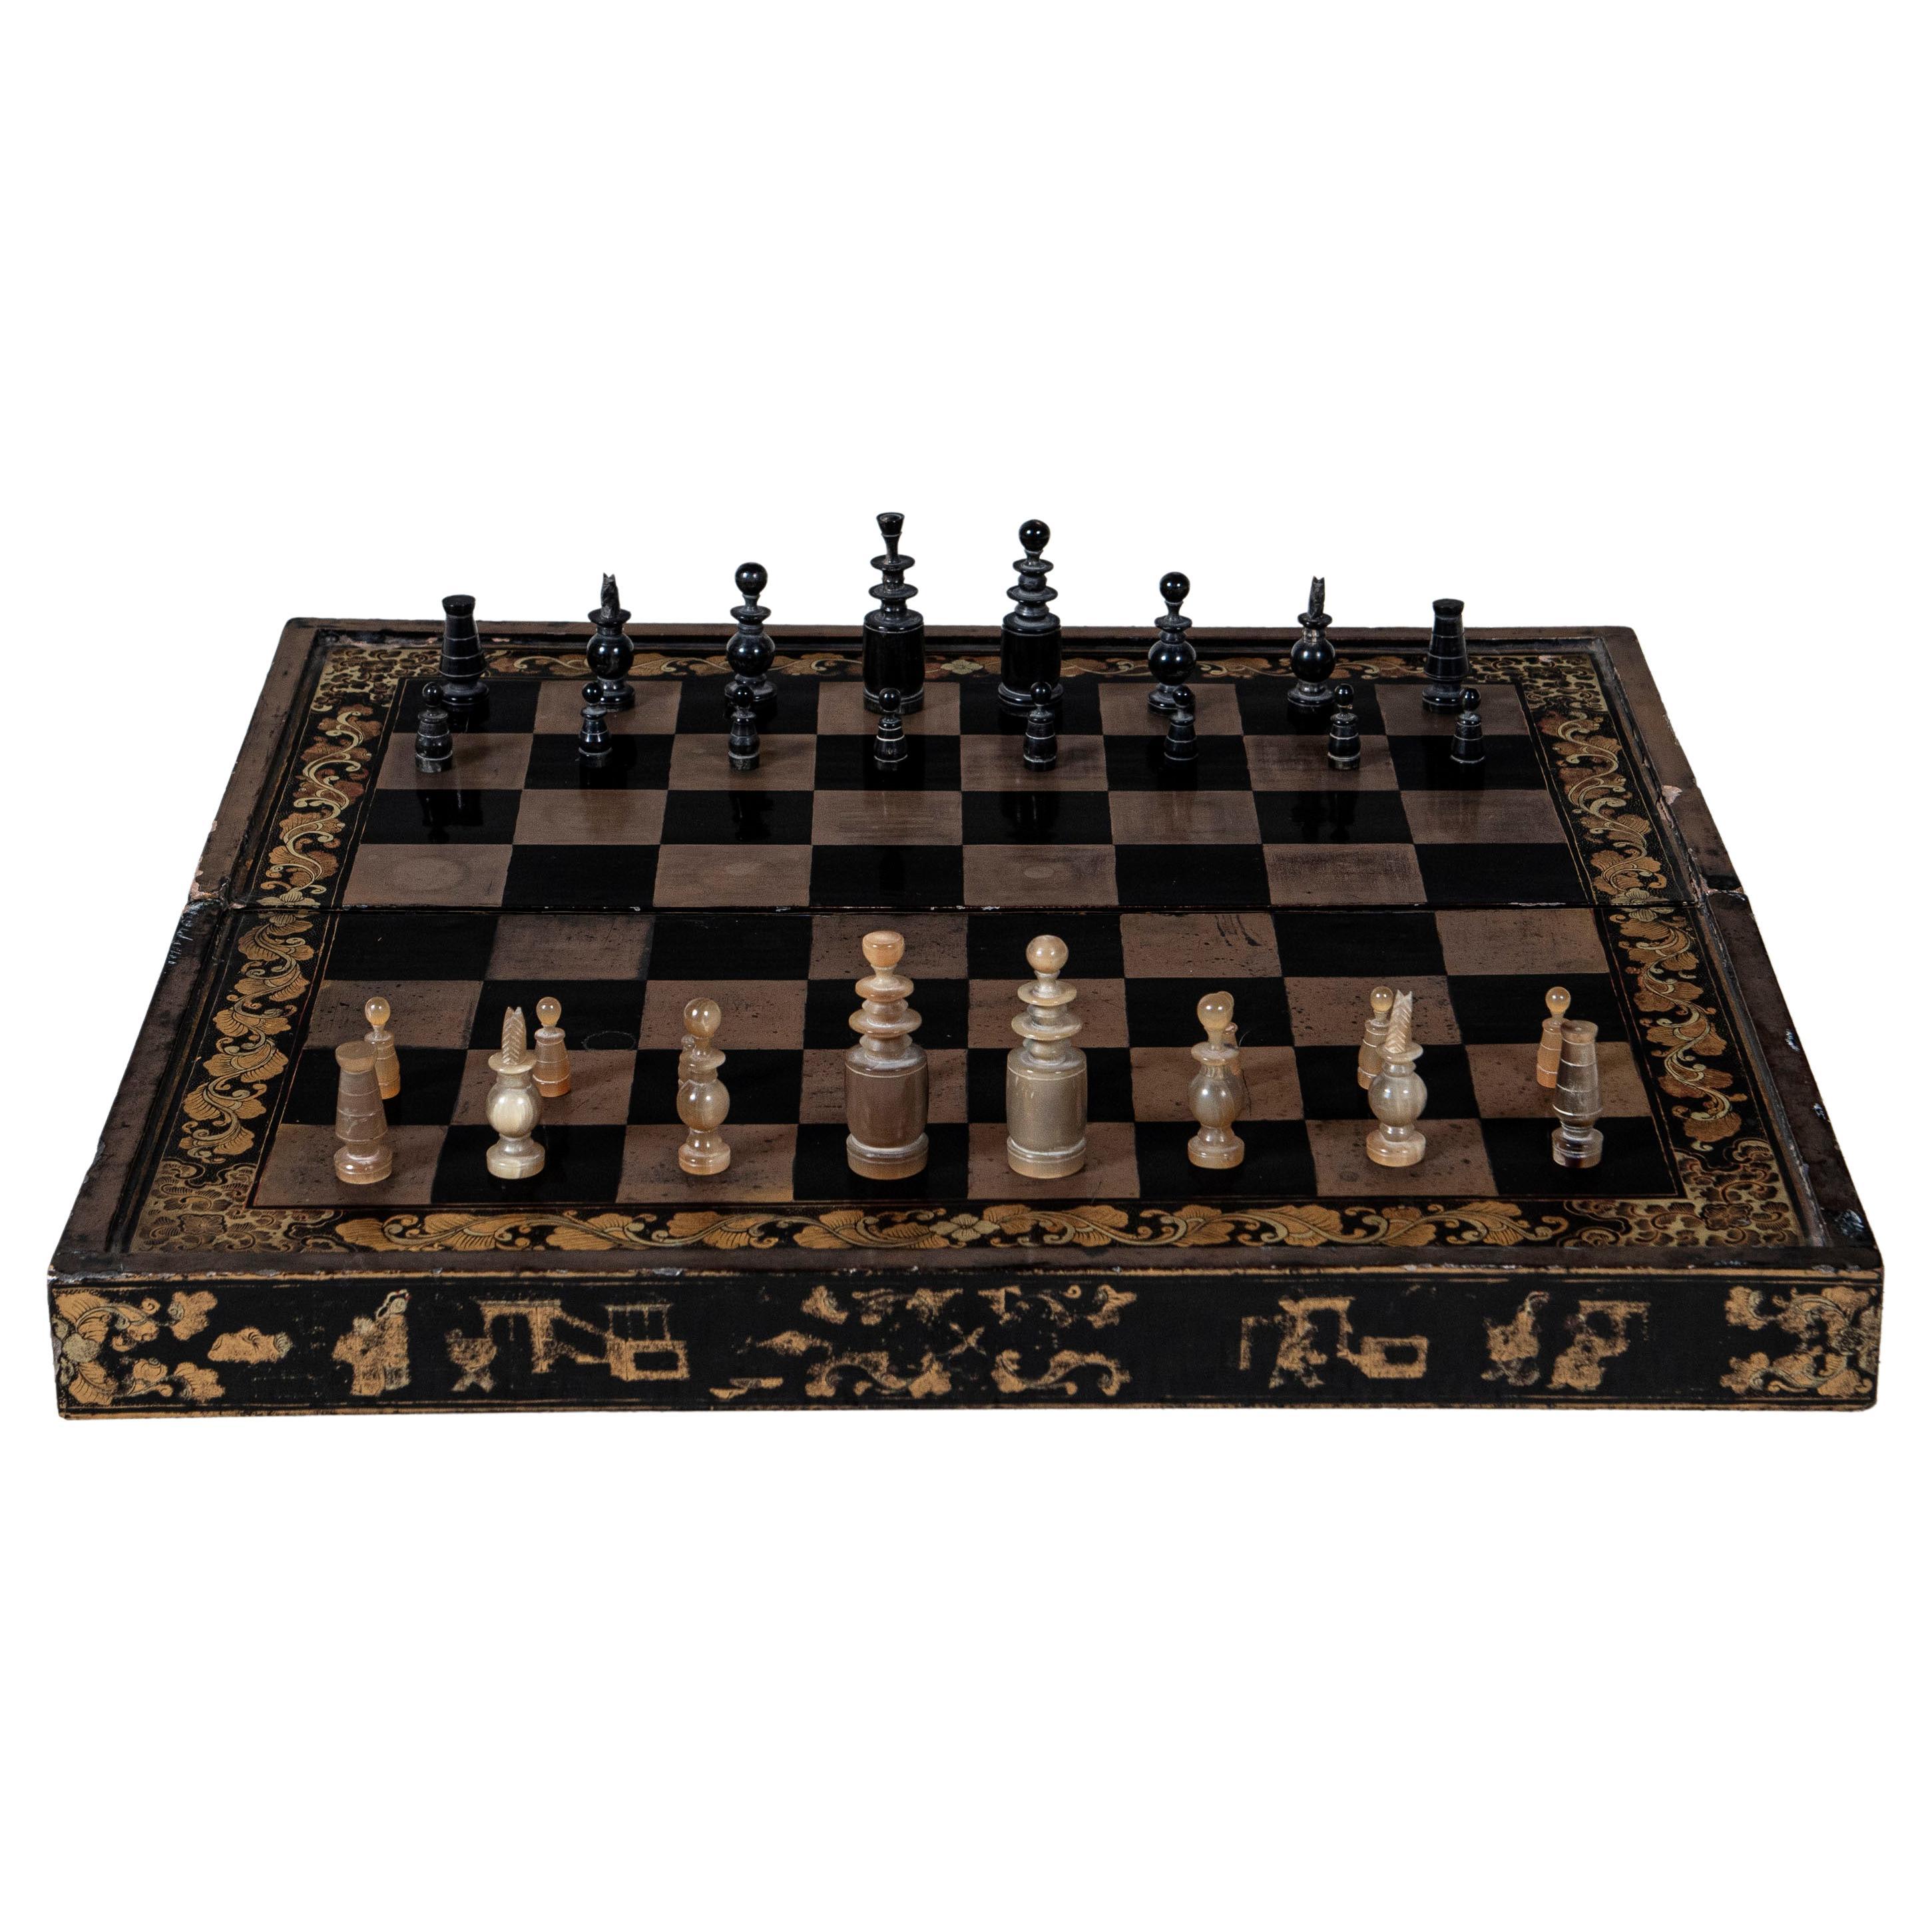 Schach- und Backgammon-Karton aus lackiertem Holz, China, spätes 19. Jahrhundert.